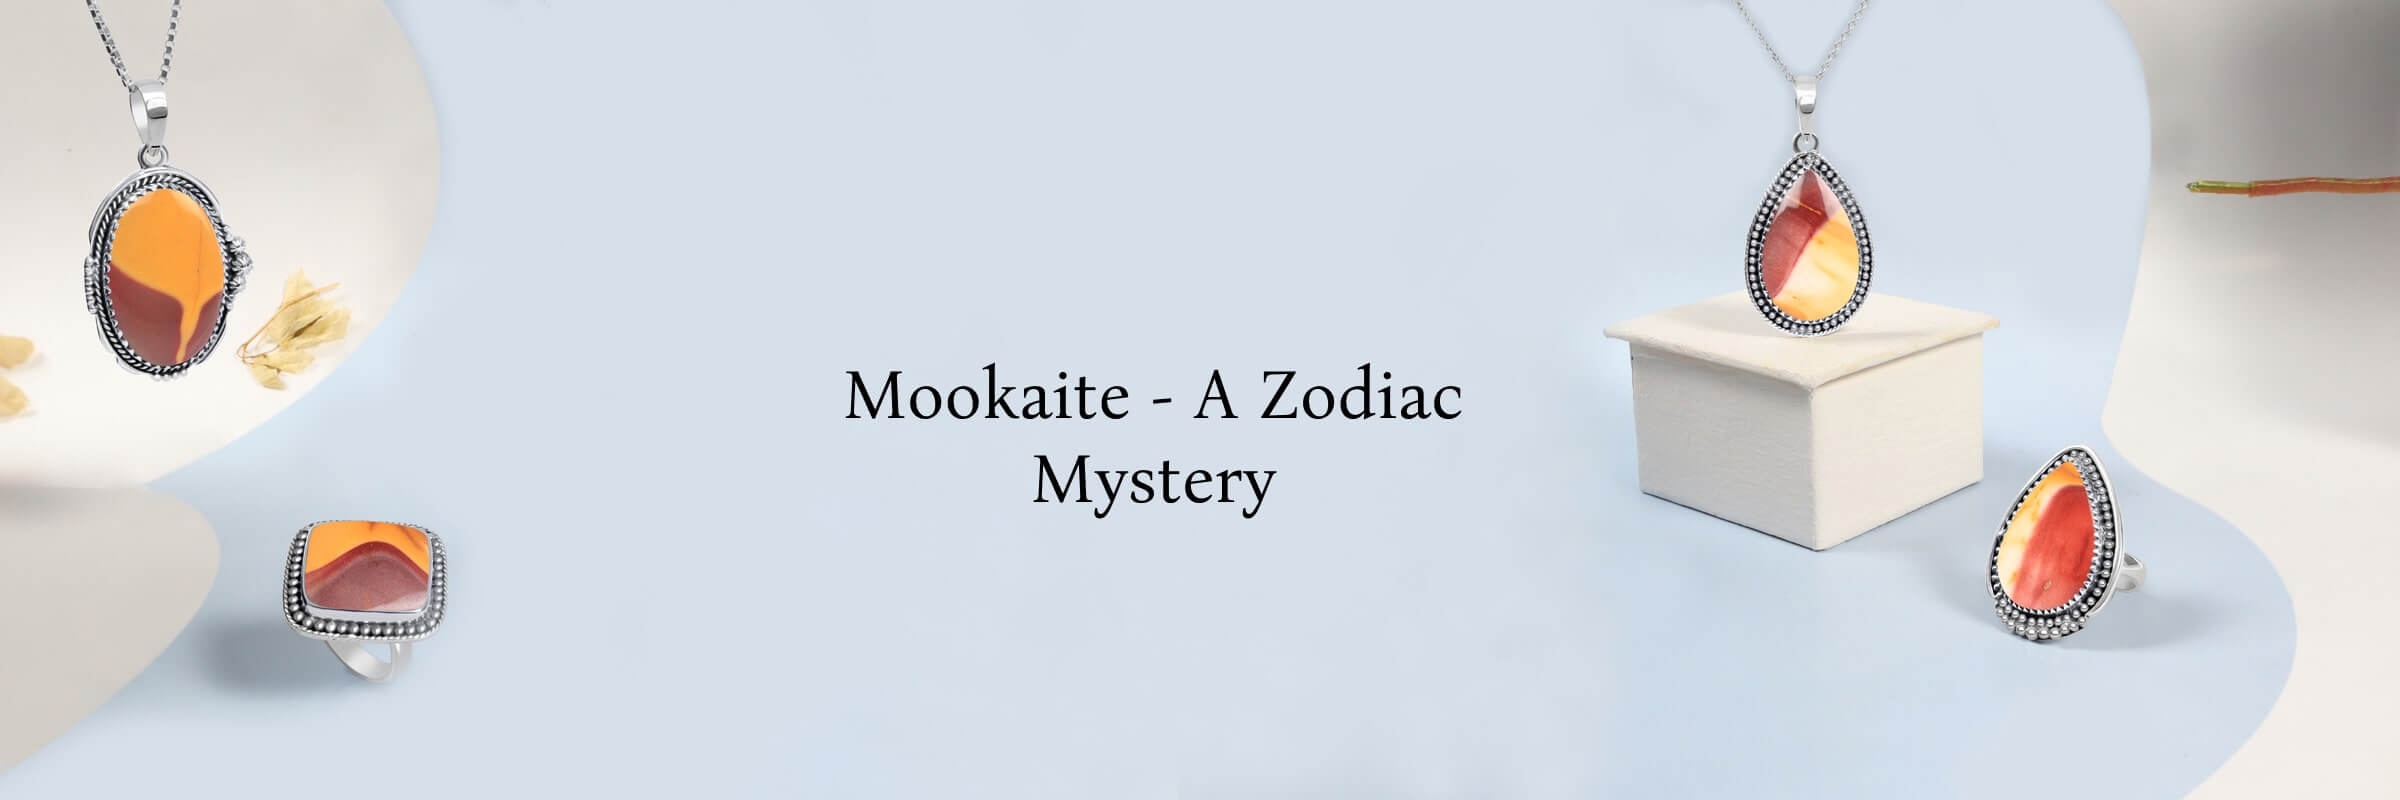 Mookaite Zodiac sign